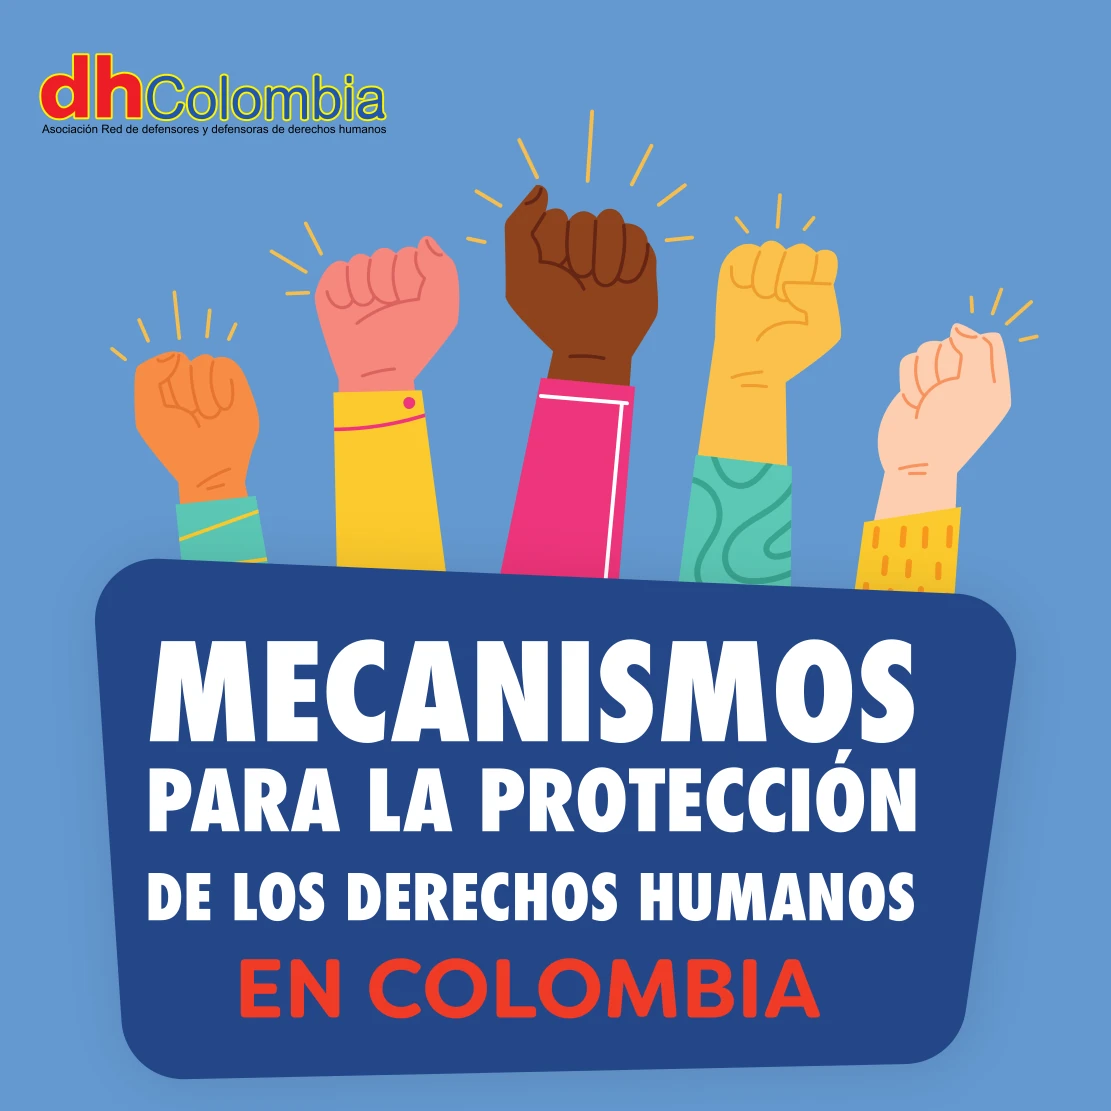 dhColombia Marco jurídico de protección de derechos humanos 3. 11 mecanismos de proteccion de ddhh